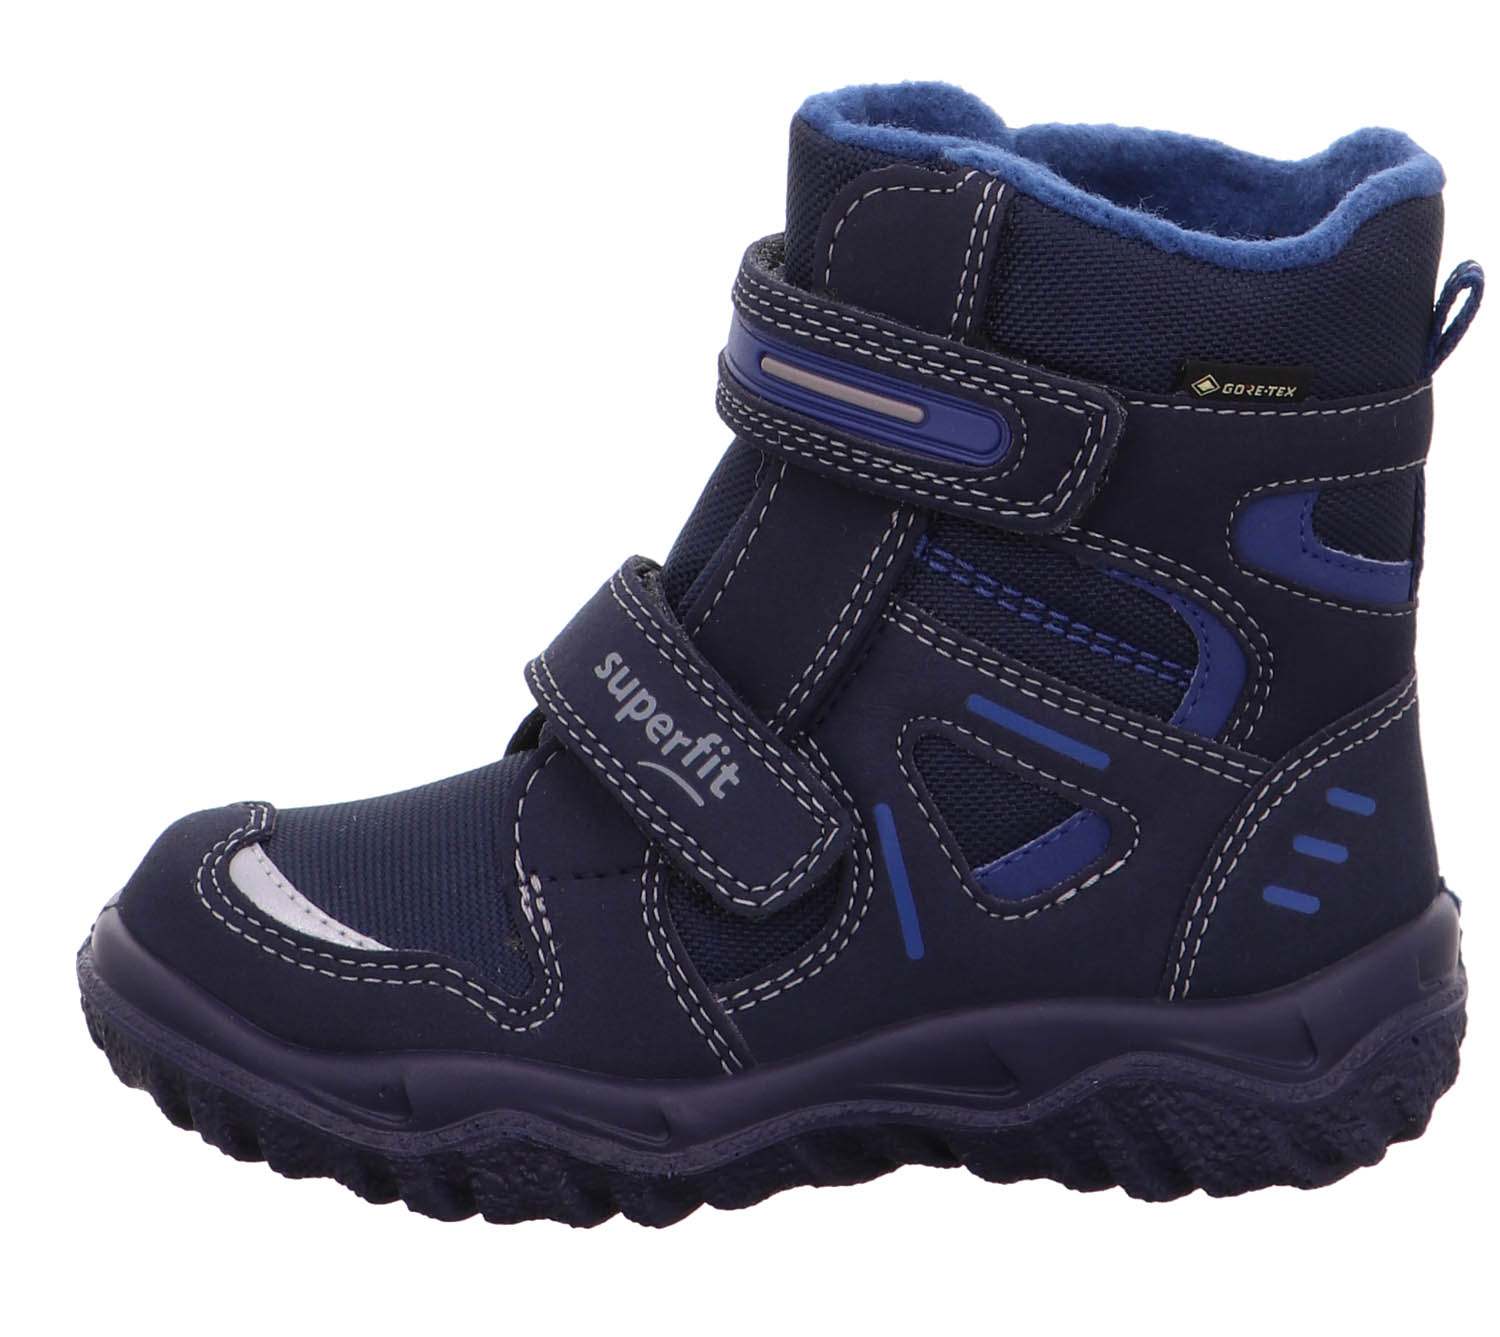 Ботинки Superfit для мальчиков, 0-809080-8300, размер 39, синие, 1 пара